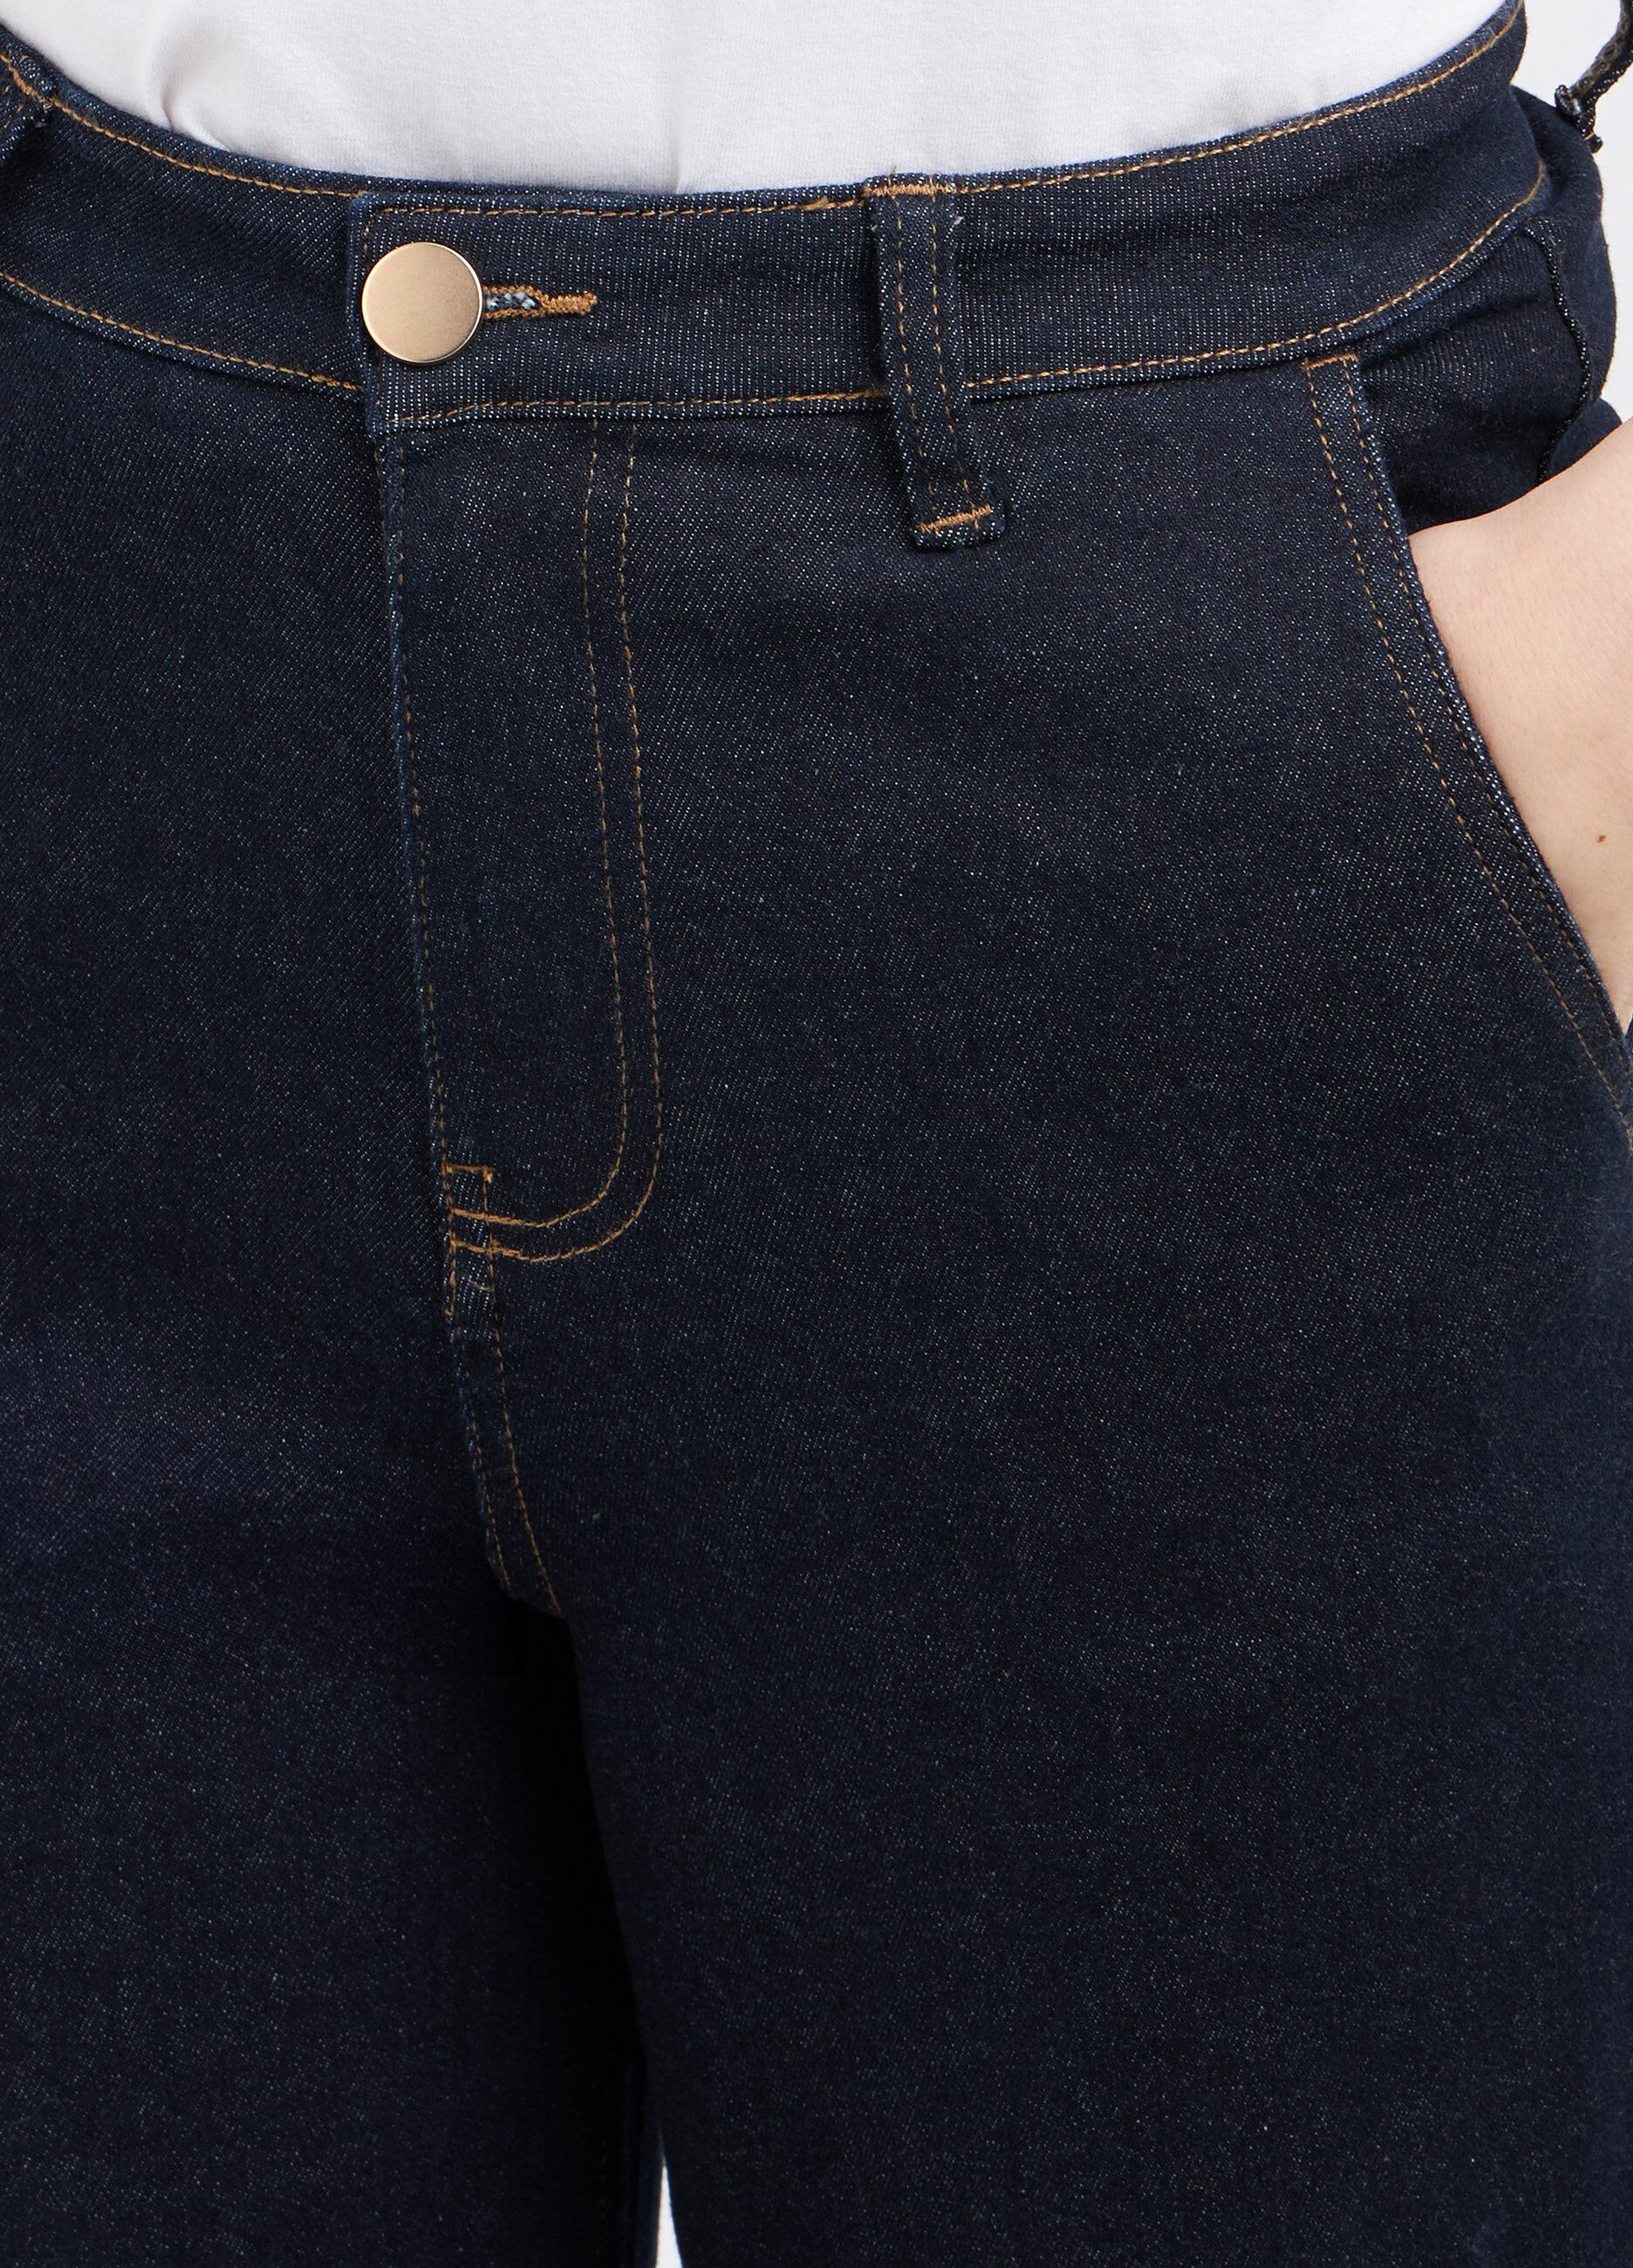 Pantaloni in denim di cotone stretch flare fit donna_2